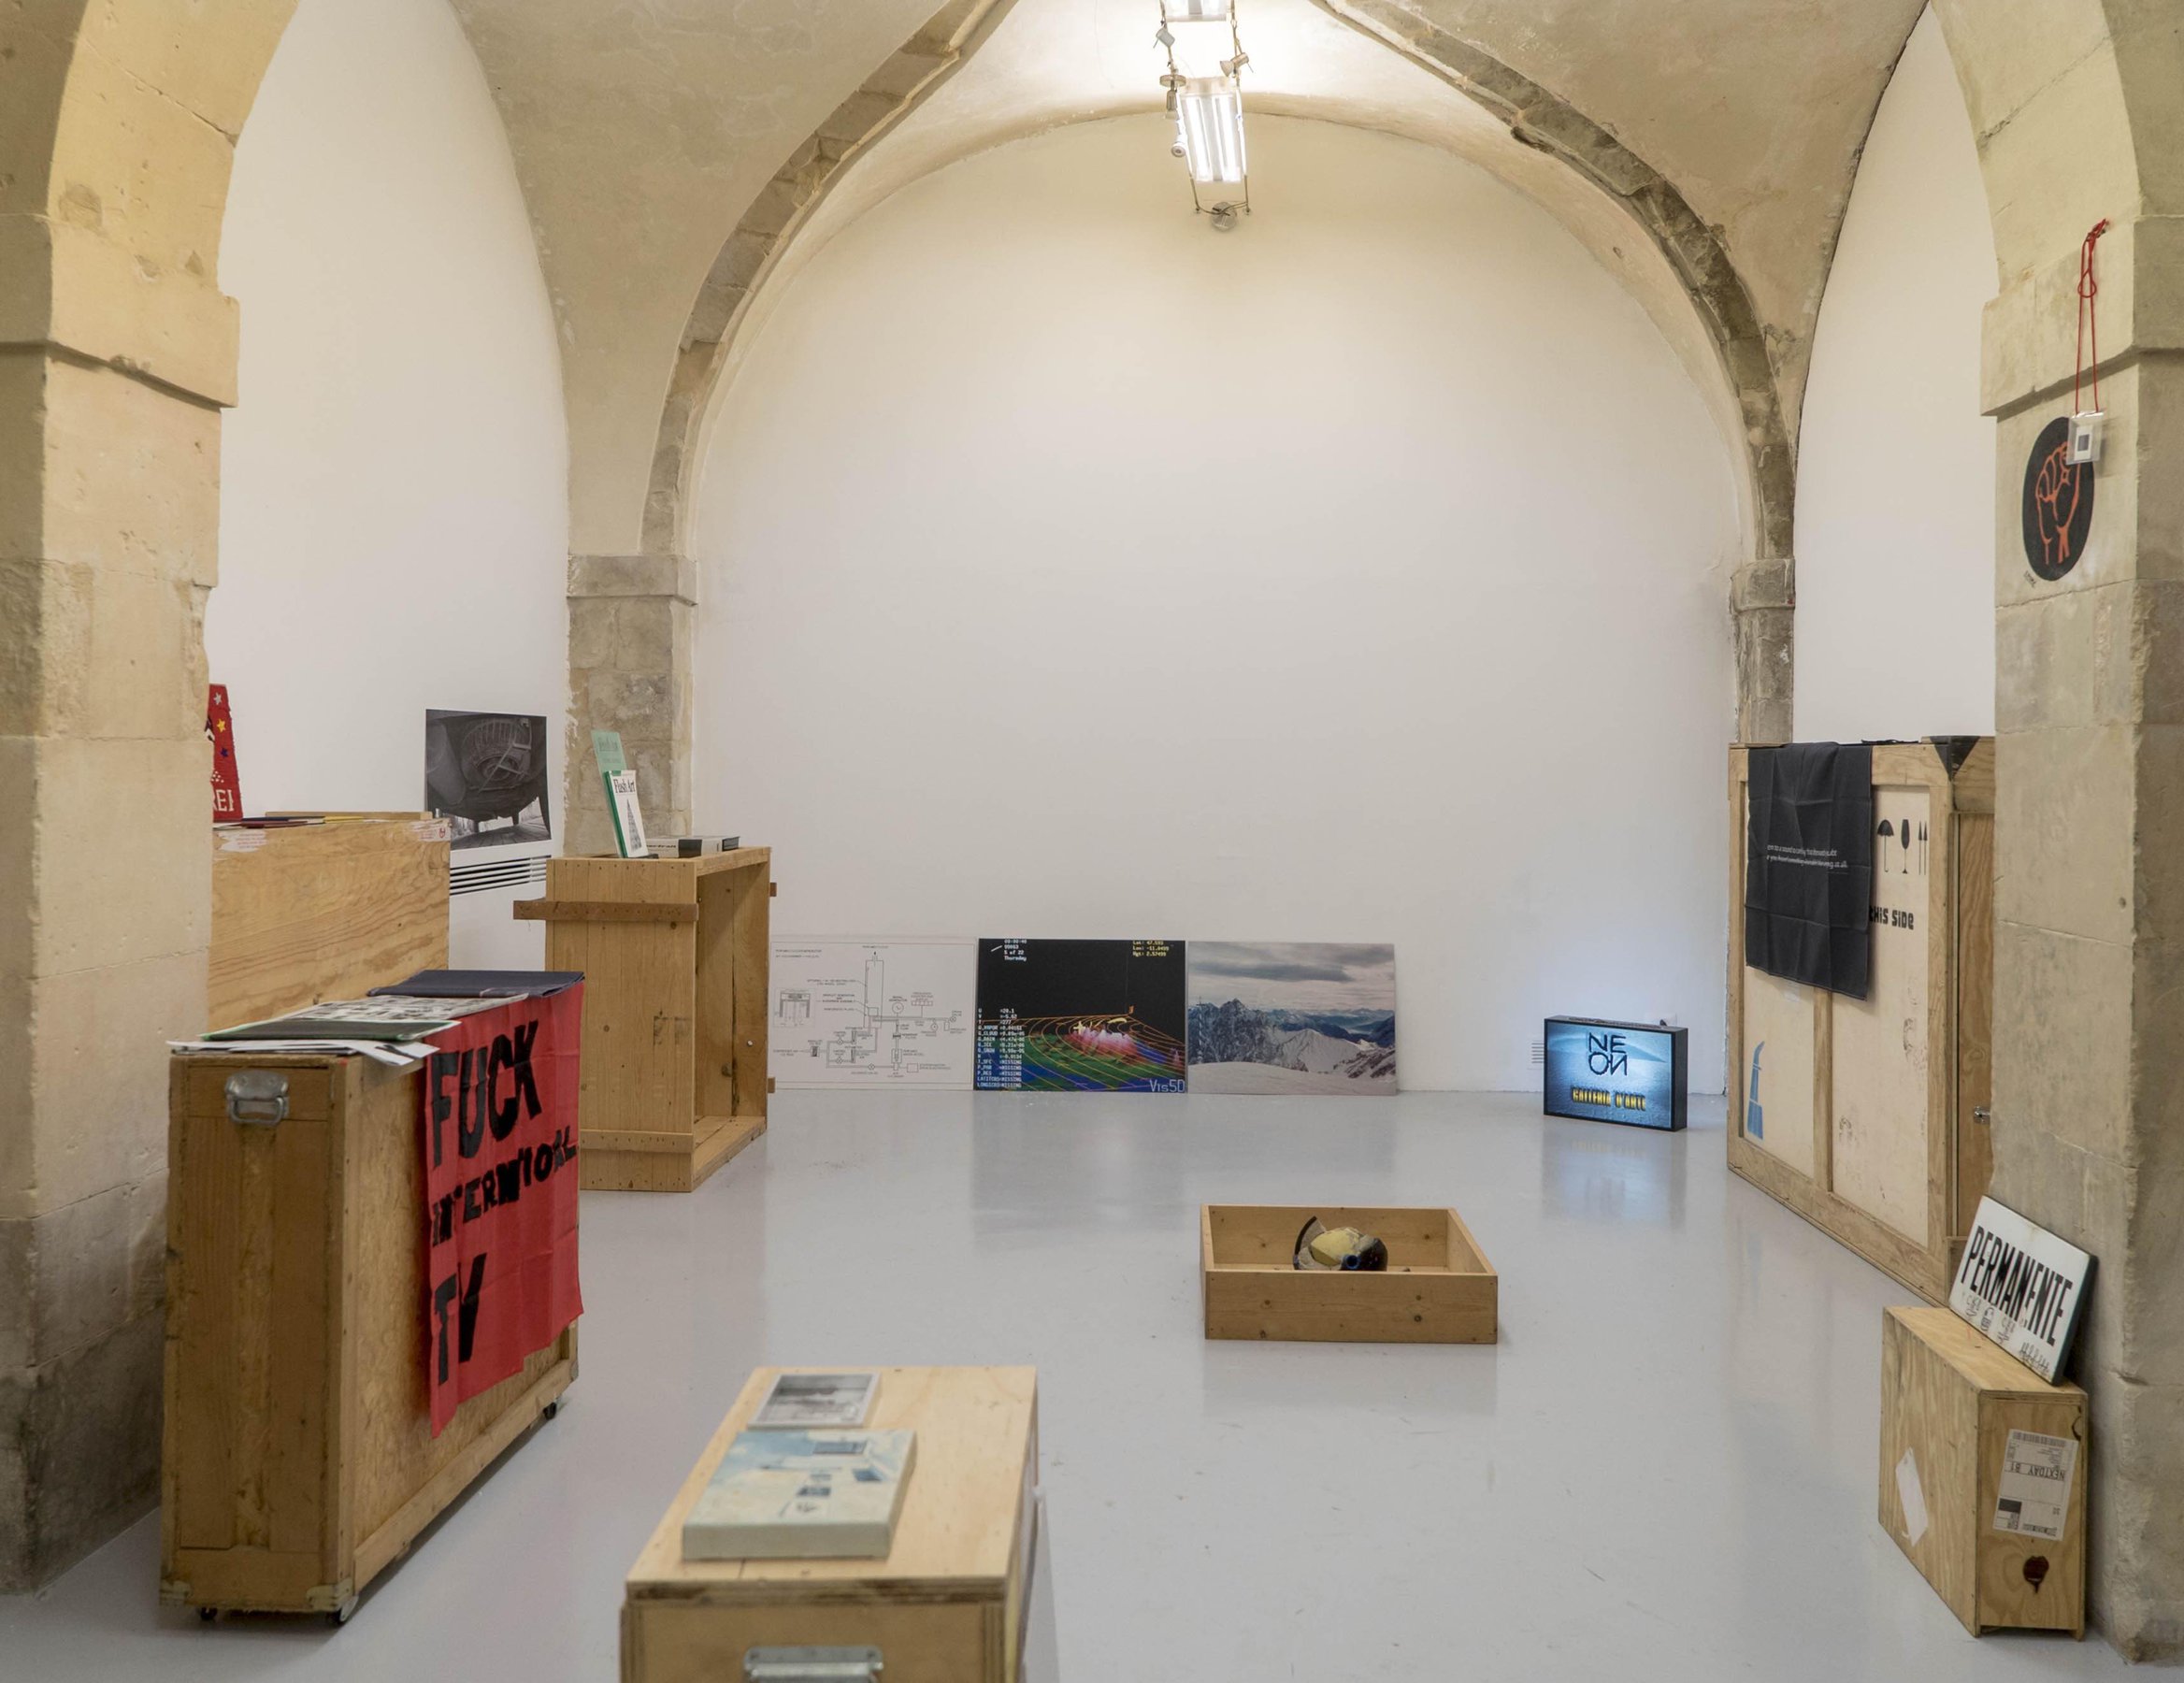 Galleria Neon, Bologna, installation view at Laveronica arte contemporanea